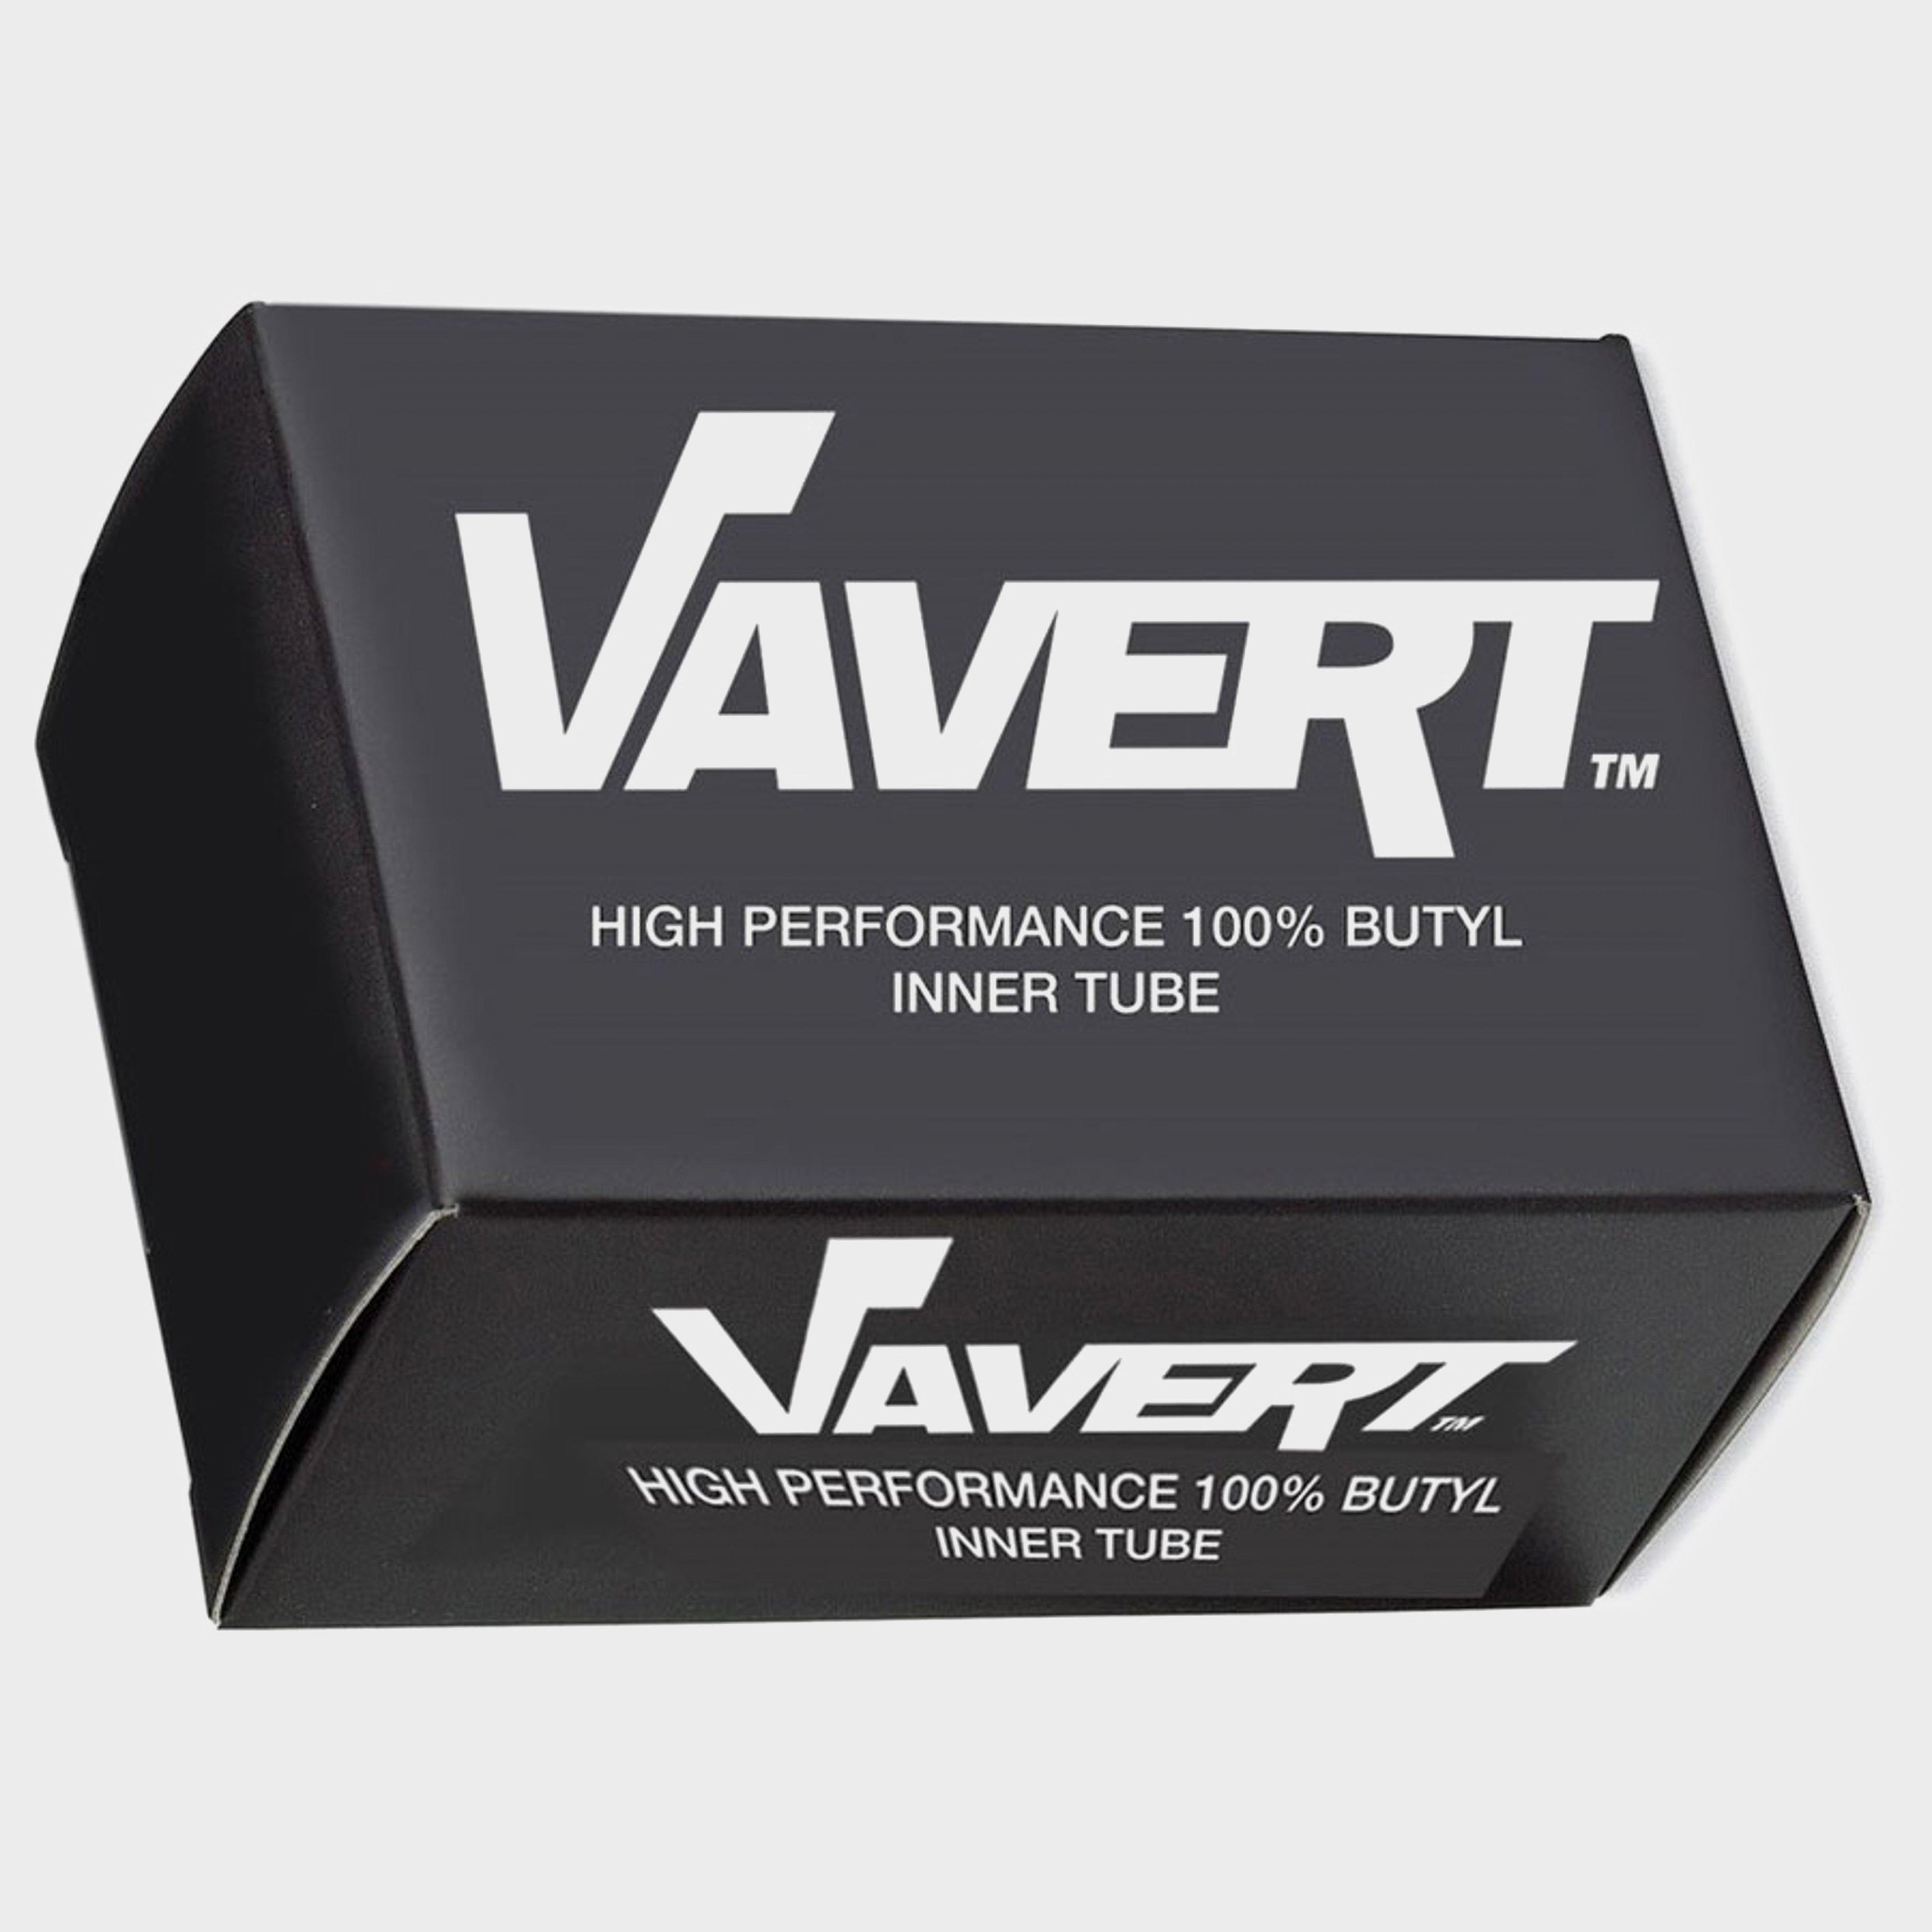 Vavert 700 X 25/32c Presta (60mm) Innertube - Black/60m  Black/60m